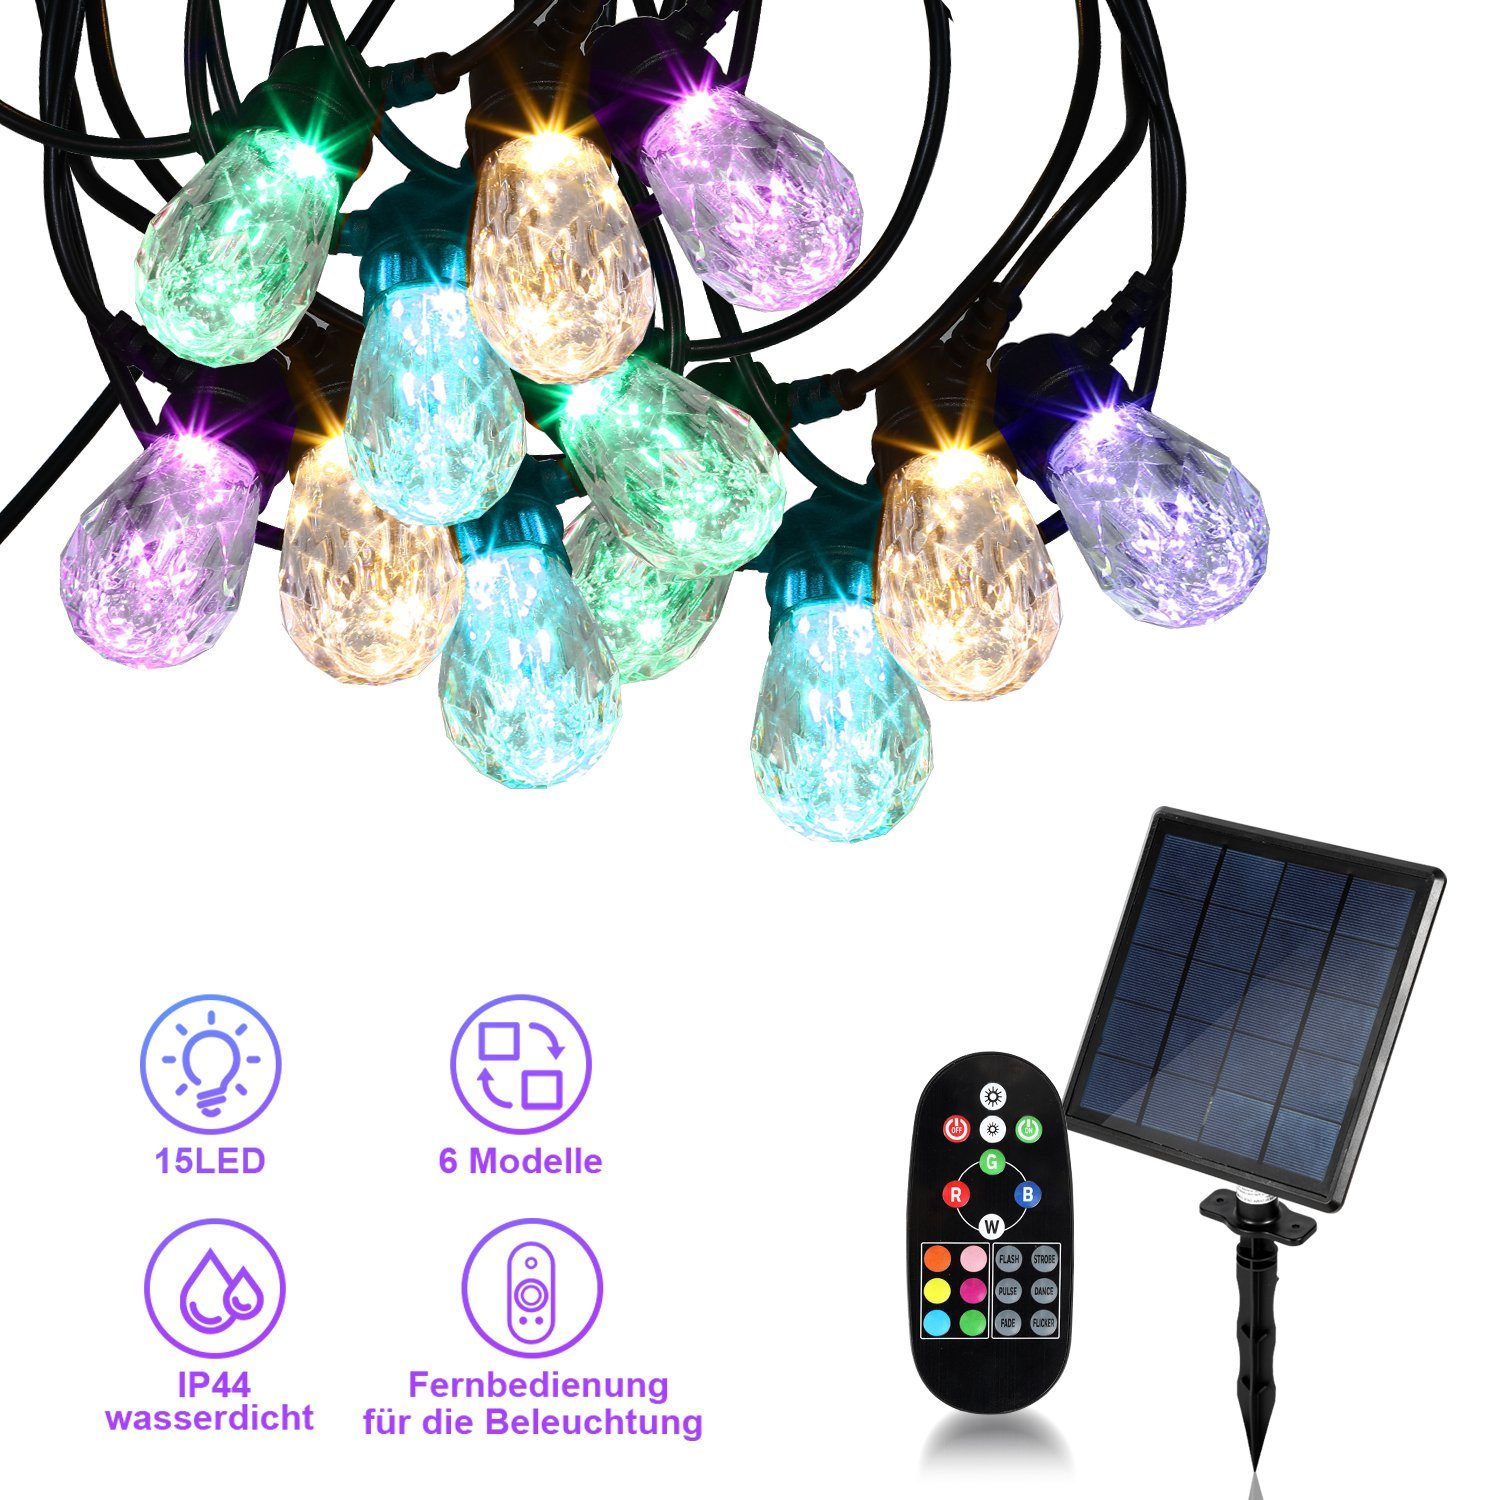 Lospitch LED-Lichterkette Solar lichterkette Mit Fernbedienung 10m Beleuchtung Lampe 15LED IP44, 15-flammig, Solar, mit Fernbedienung